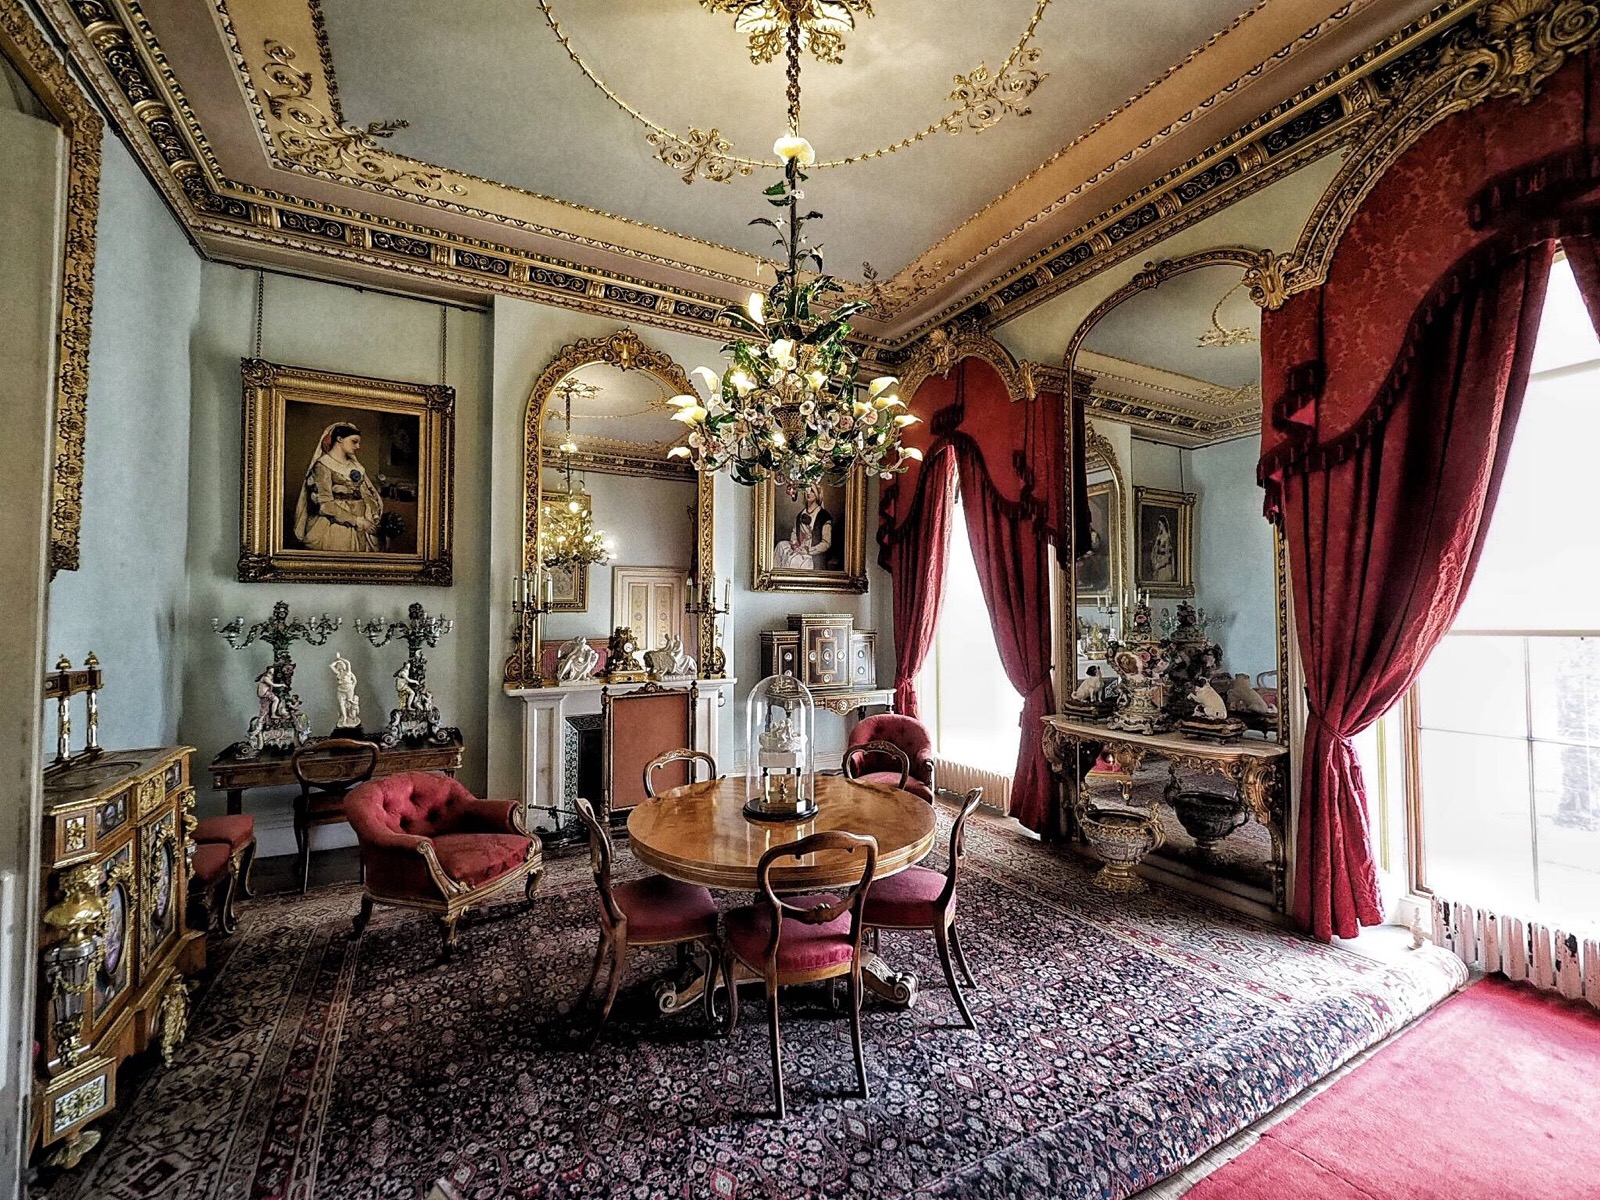 女王和阿尔伯特亲王作为夏季避暑而修建的意大利文艺复兴时期风格宫殿